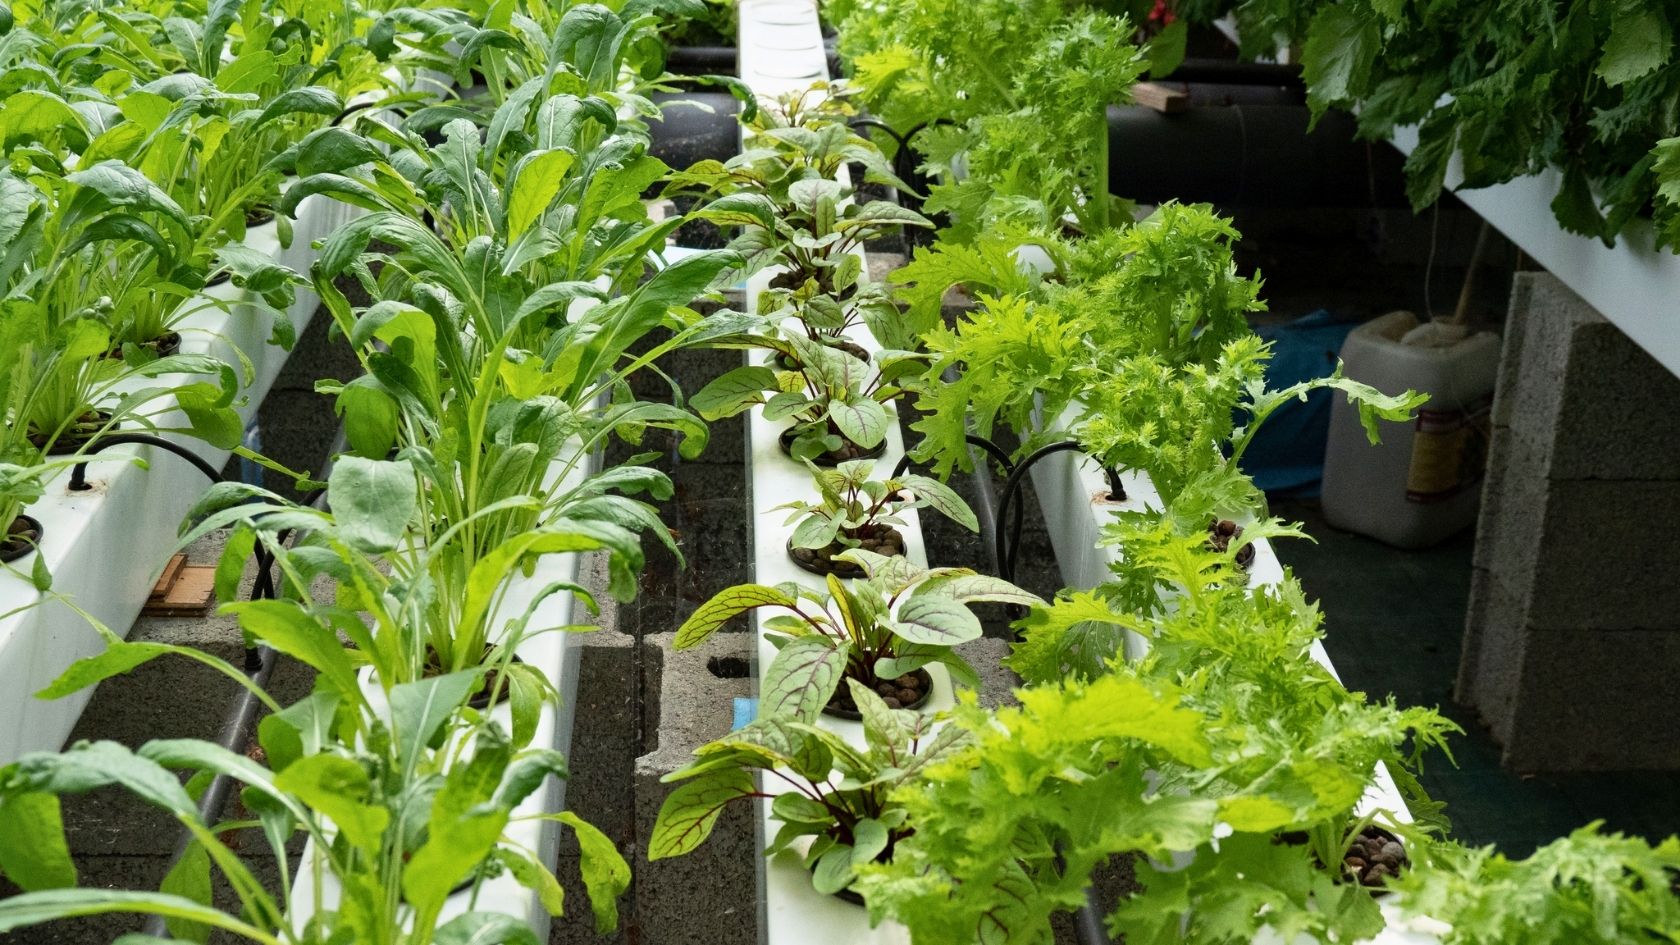 La culture de salade en hydroponie se développe